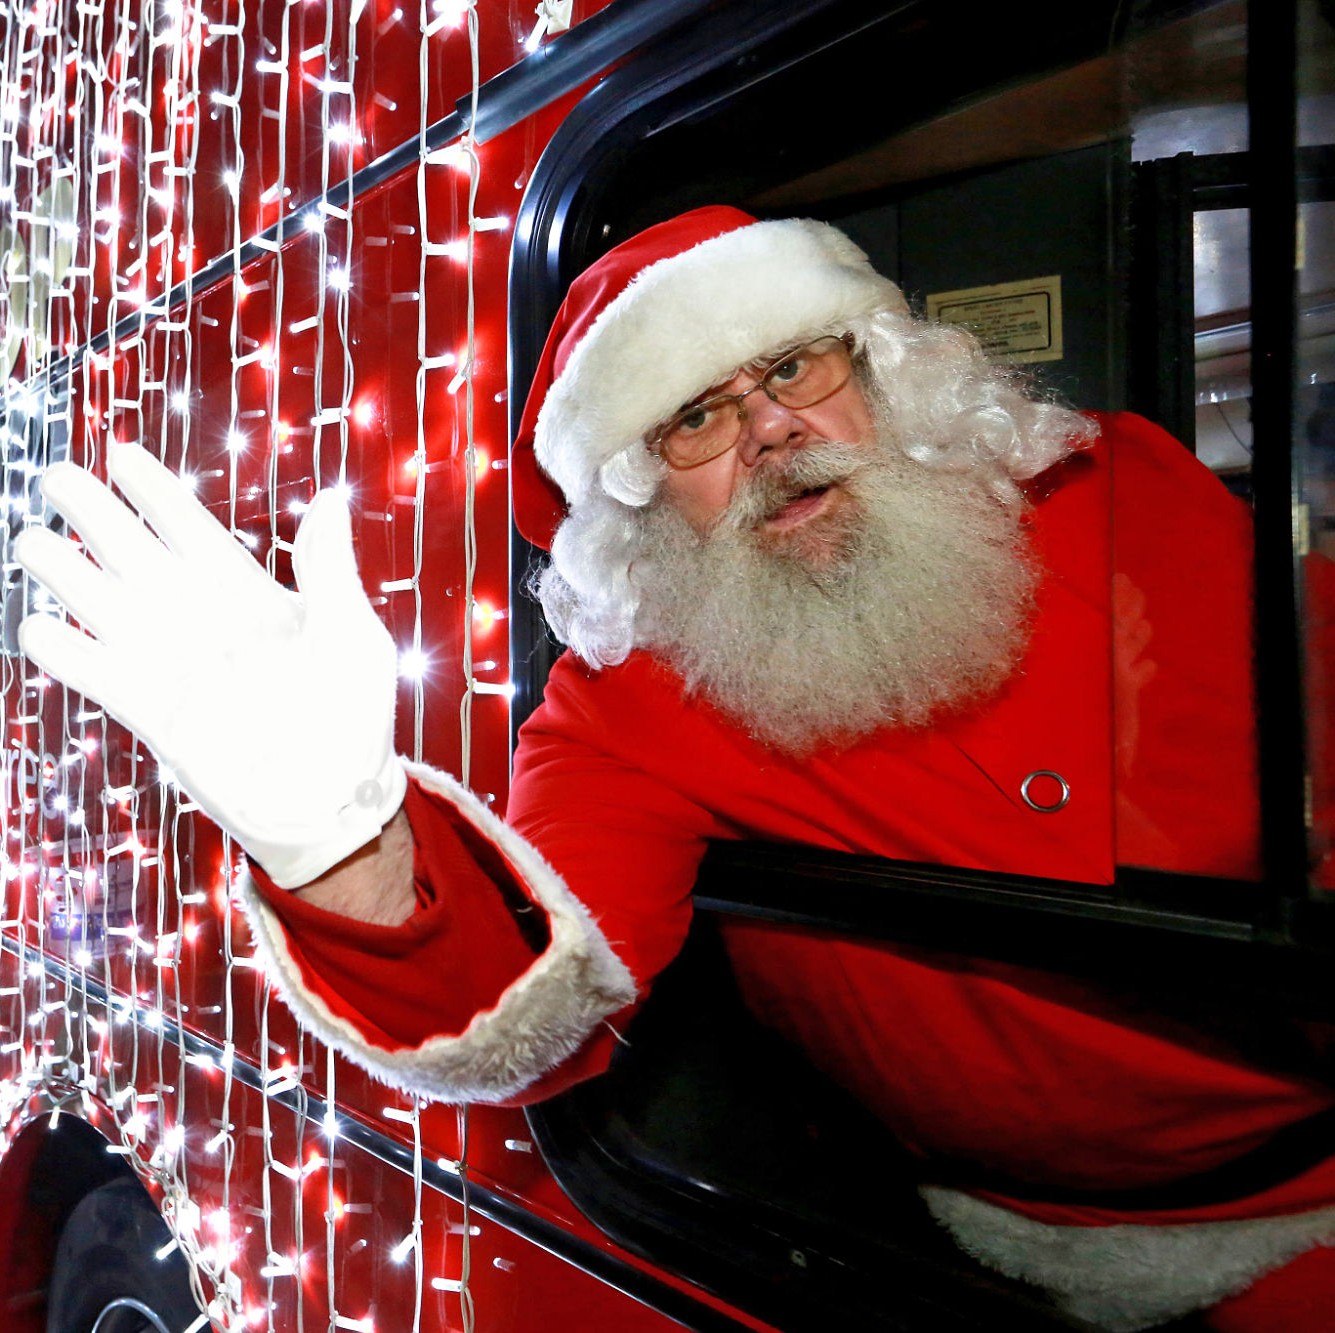 Santa Claus waving from a bus